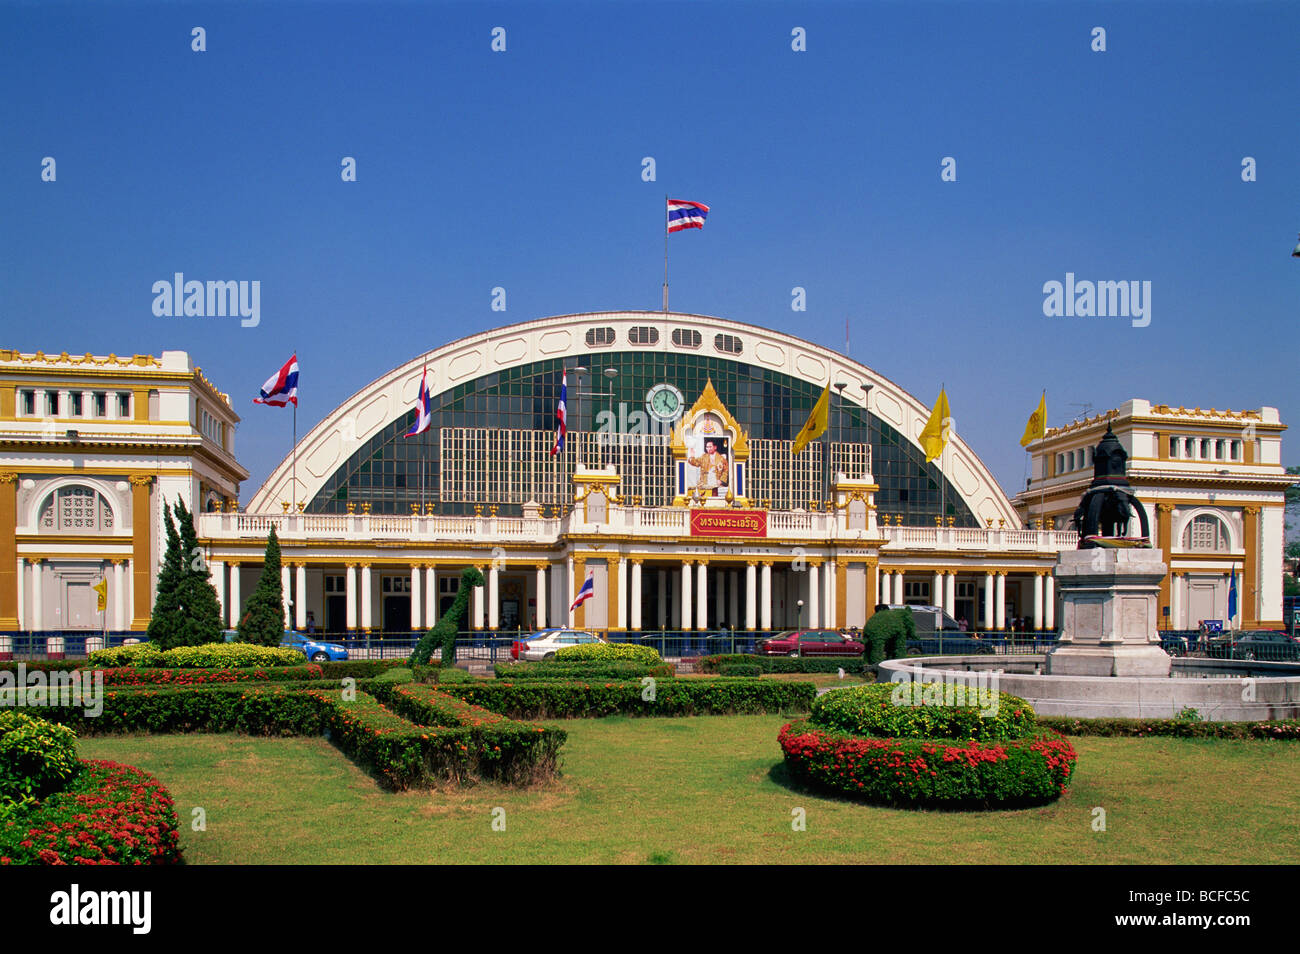 Thailand, Bangkok, Hualamphong Railway Station Stock Photo